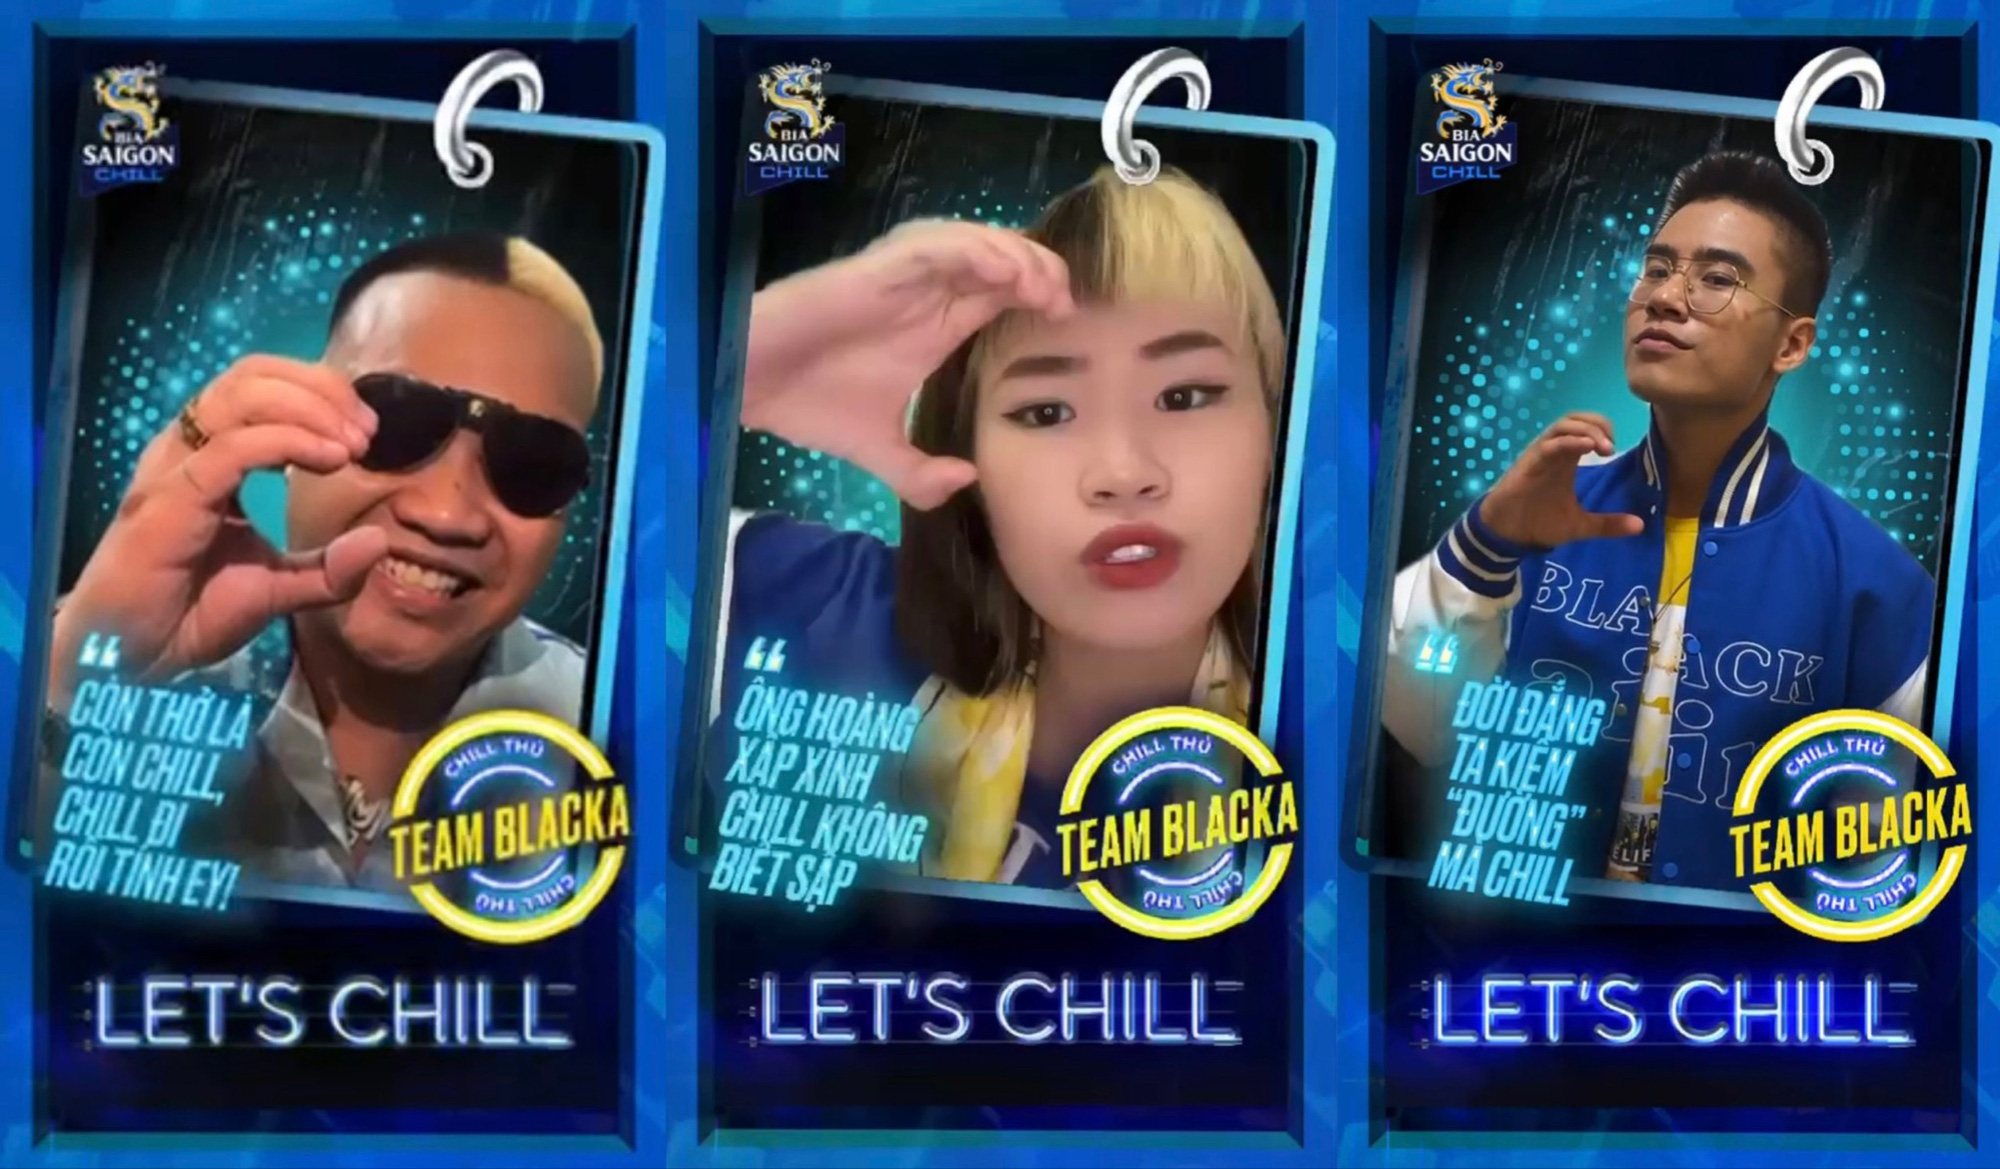 3 rapper Việt đình đám Blacka, Tia, Ricky Star cùng thông điệp “sống Chill” gửi tới người trẻ - Ảnh 3.